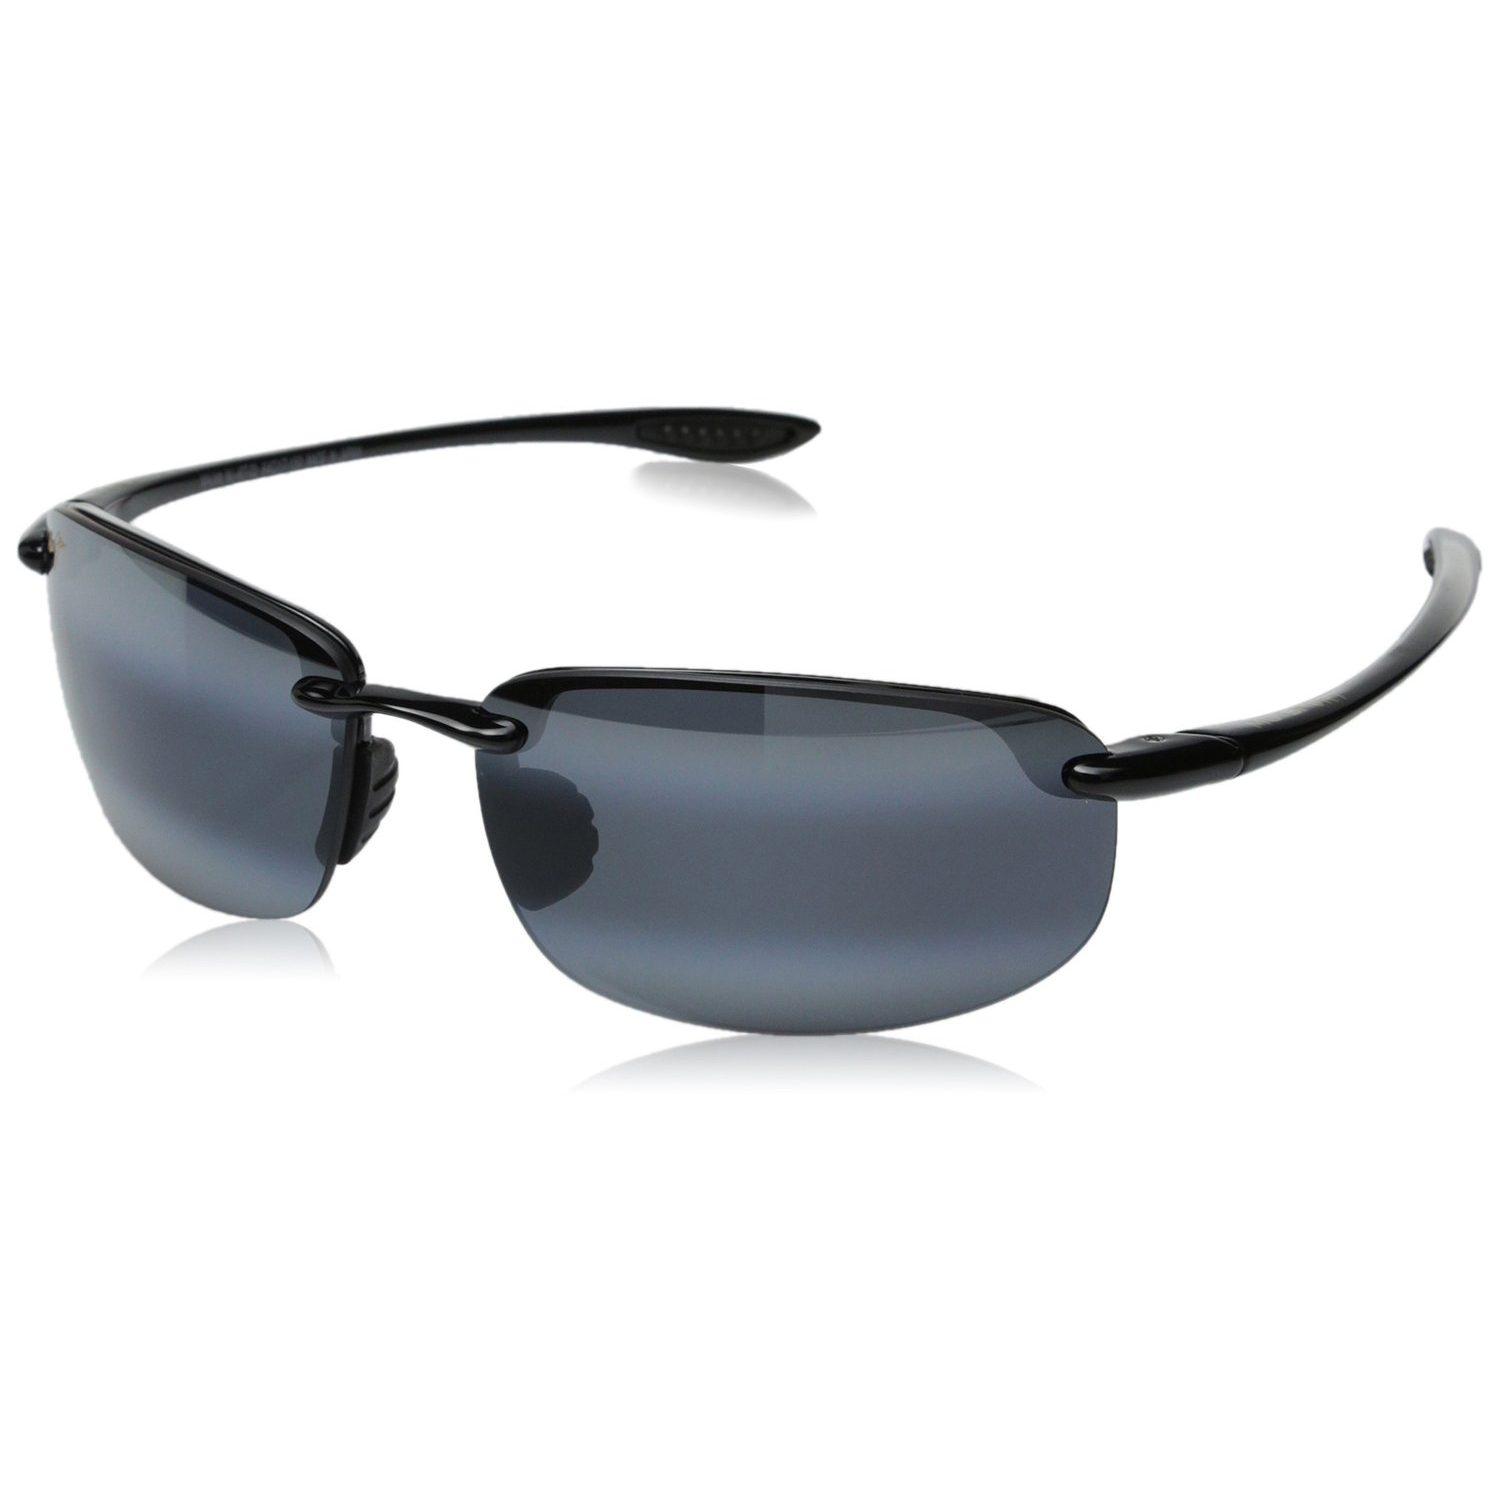 Maui Jim Sunglasses | Ho’okipa 407-02 | Gloss Black Rimless Frame ...